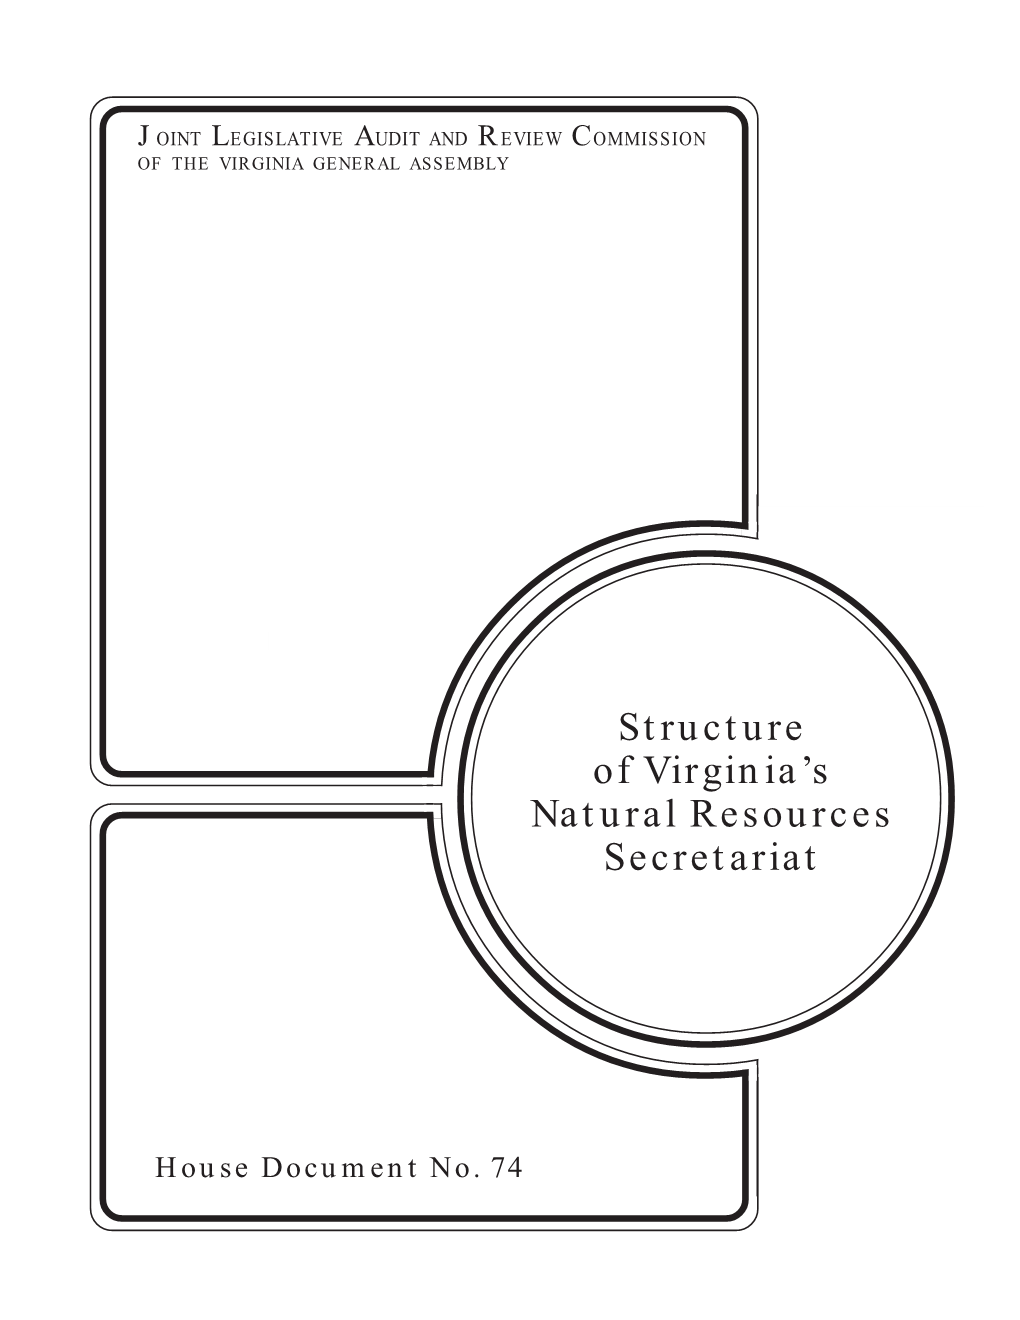 Structure of Virginia's Natural Resources Secretariat